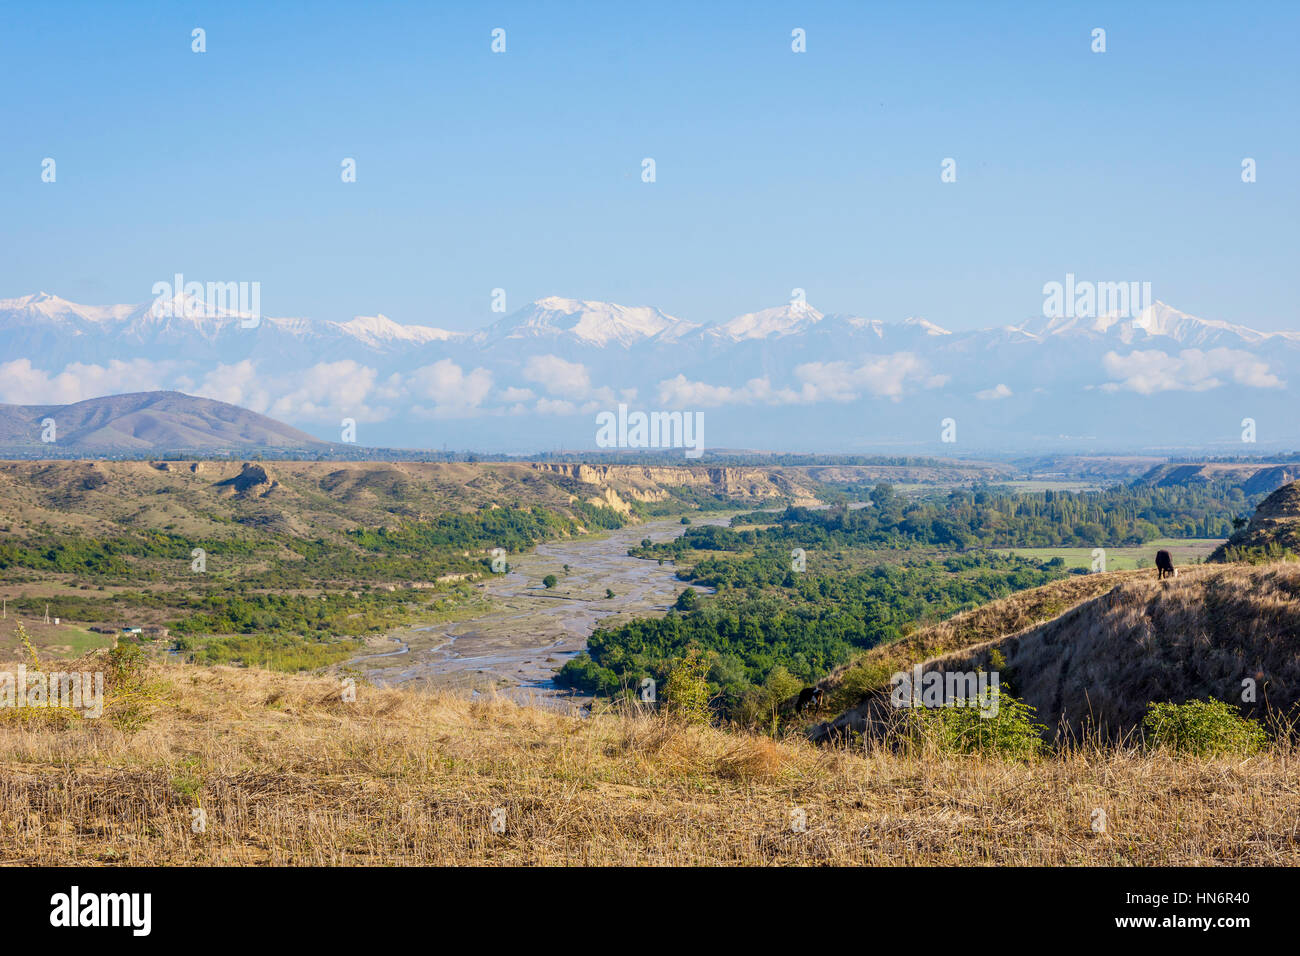 Fluss, grüne Wiese, goldene Felder und Berge mit schneebedeckten Gipfeln, erstaunliche Landschaften von Aserbaidschan Stockfoto